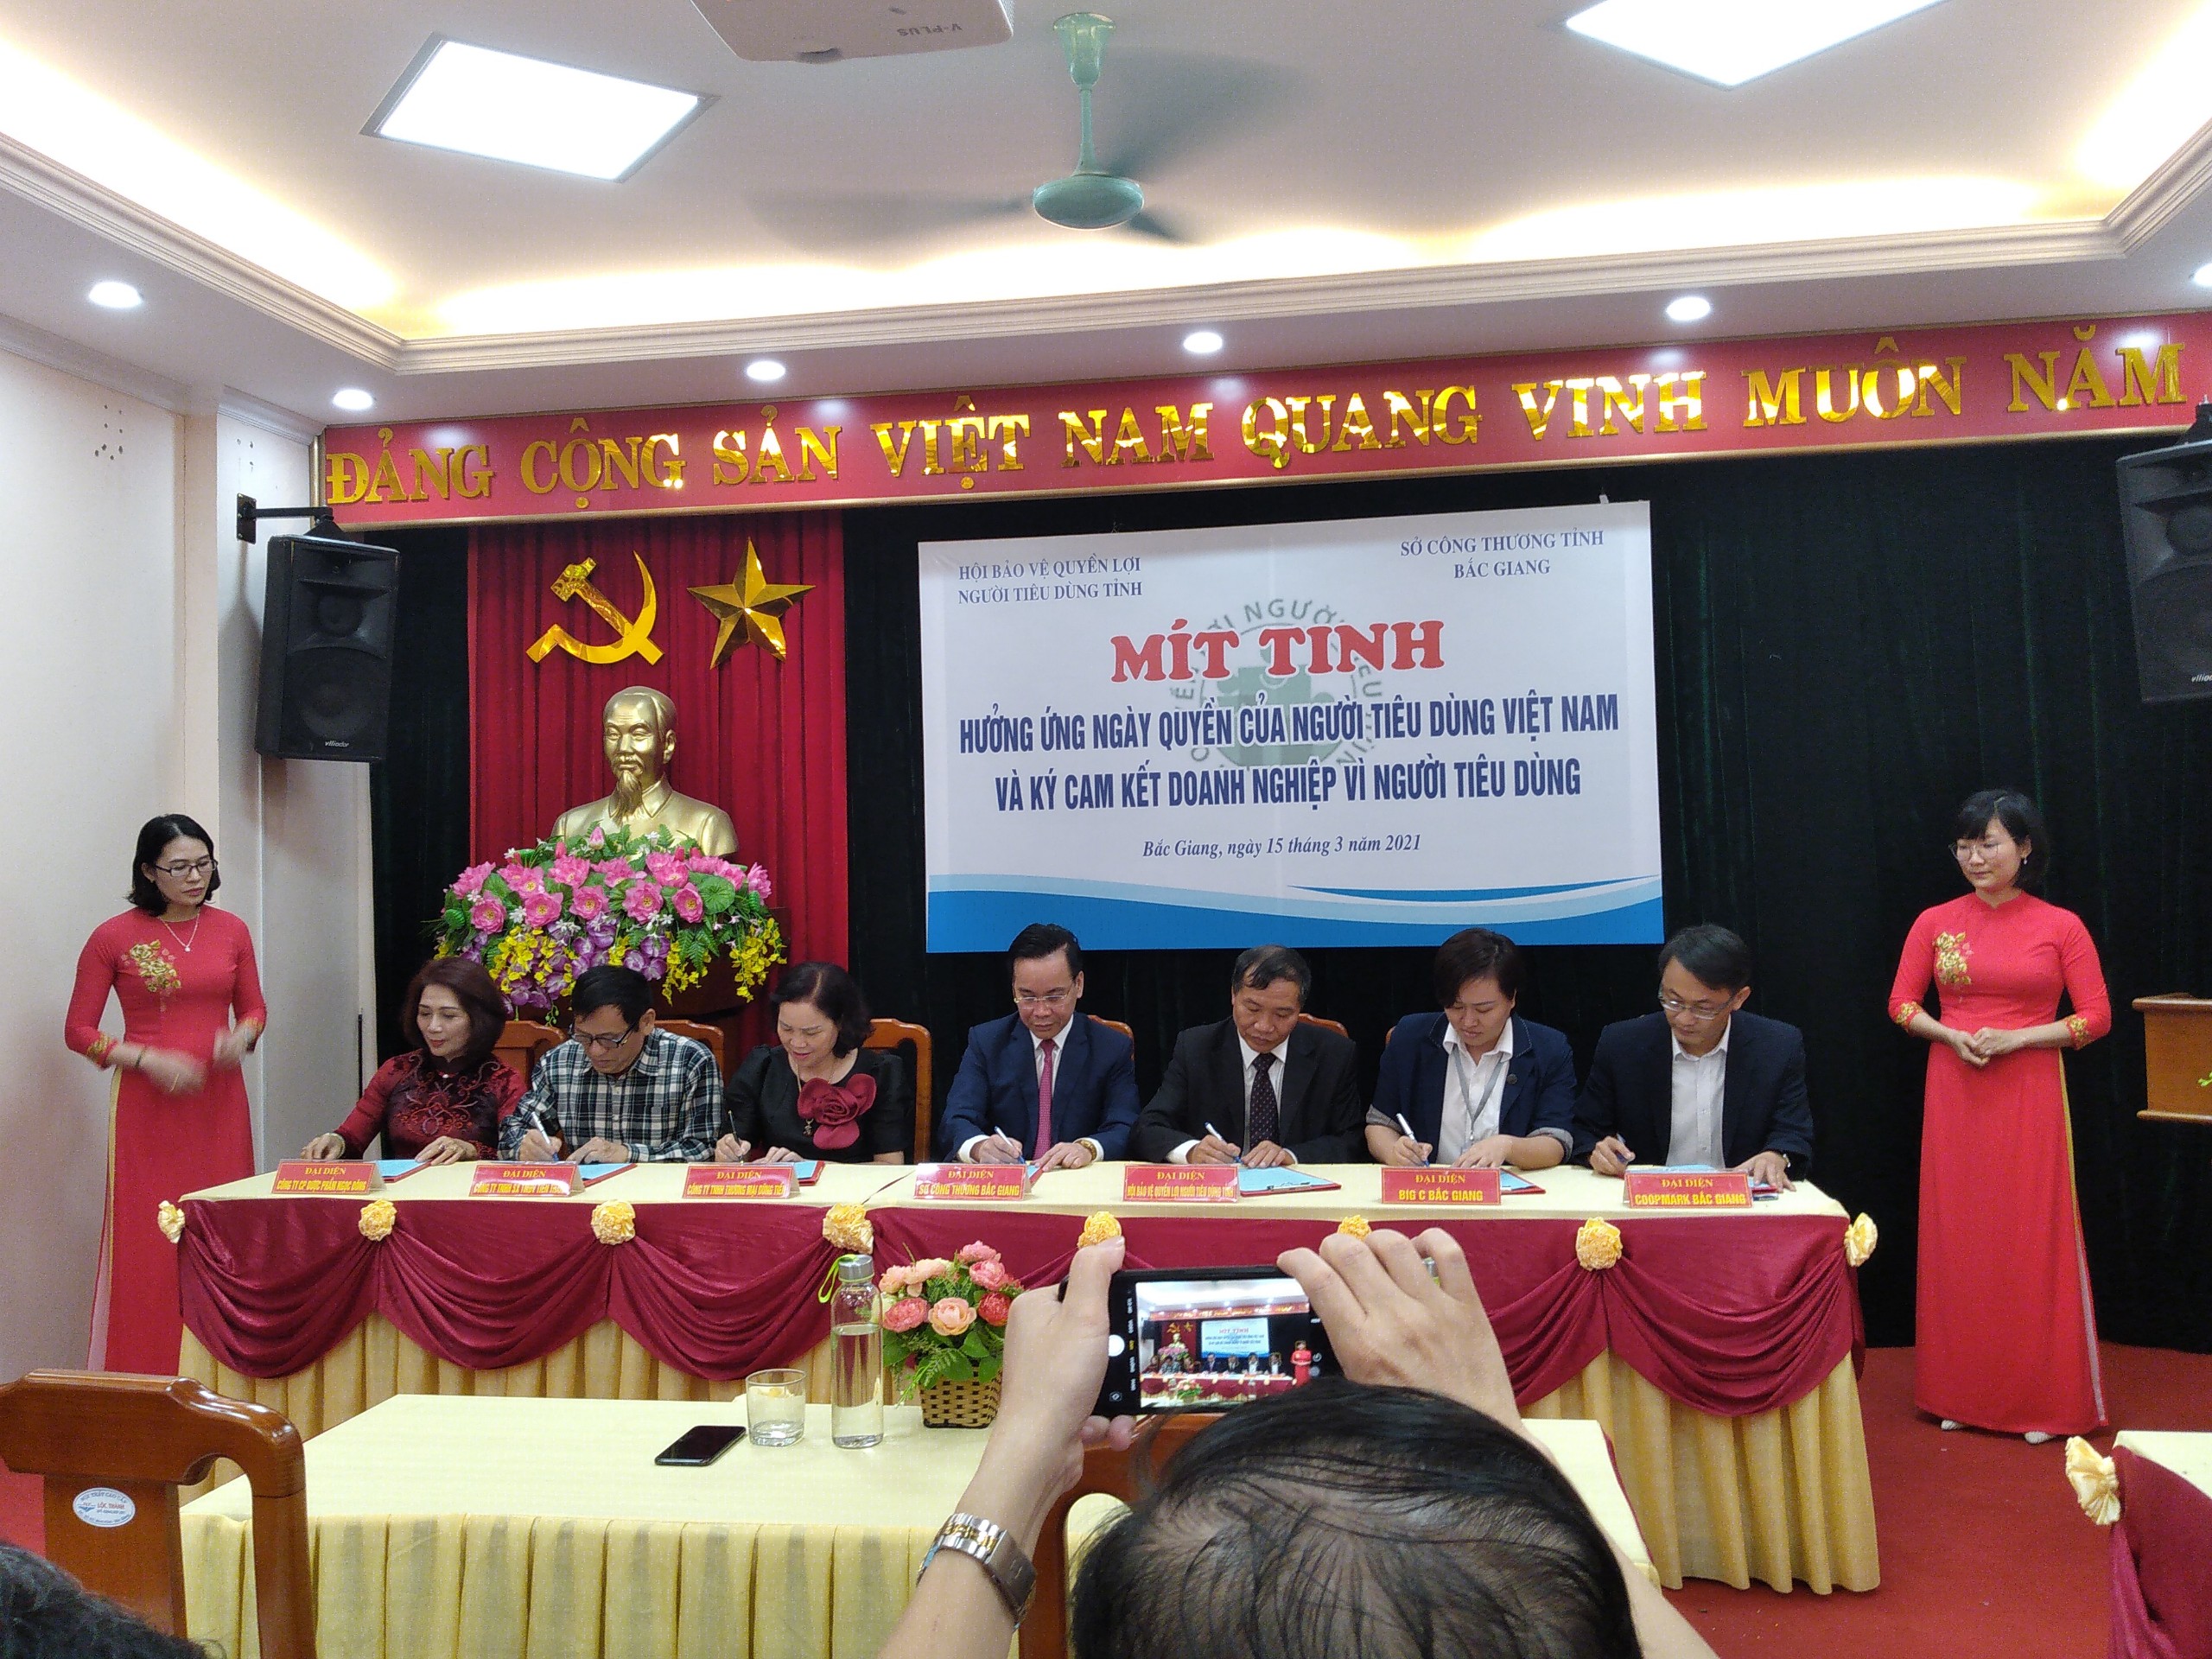 Mít ting hưởng ứng ngày quyền của người tiêu dùng Việt Nam và ký cam kết doanh nghiệp vì người...